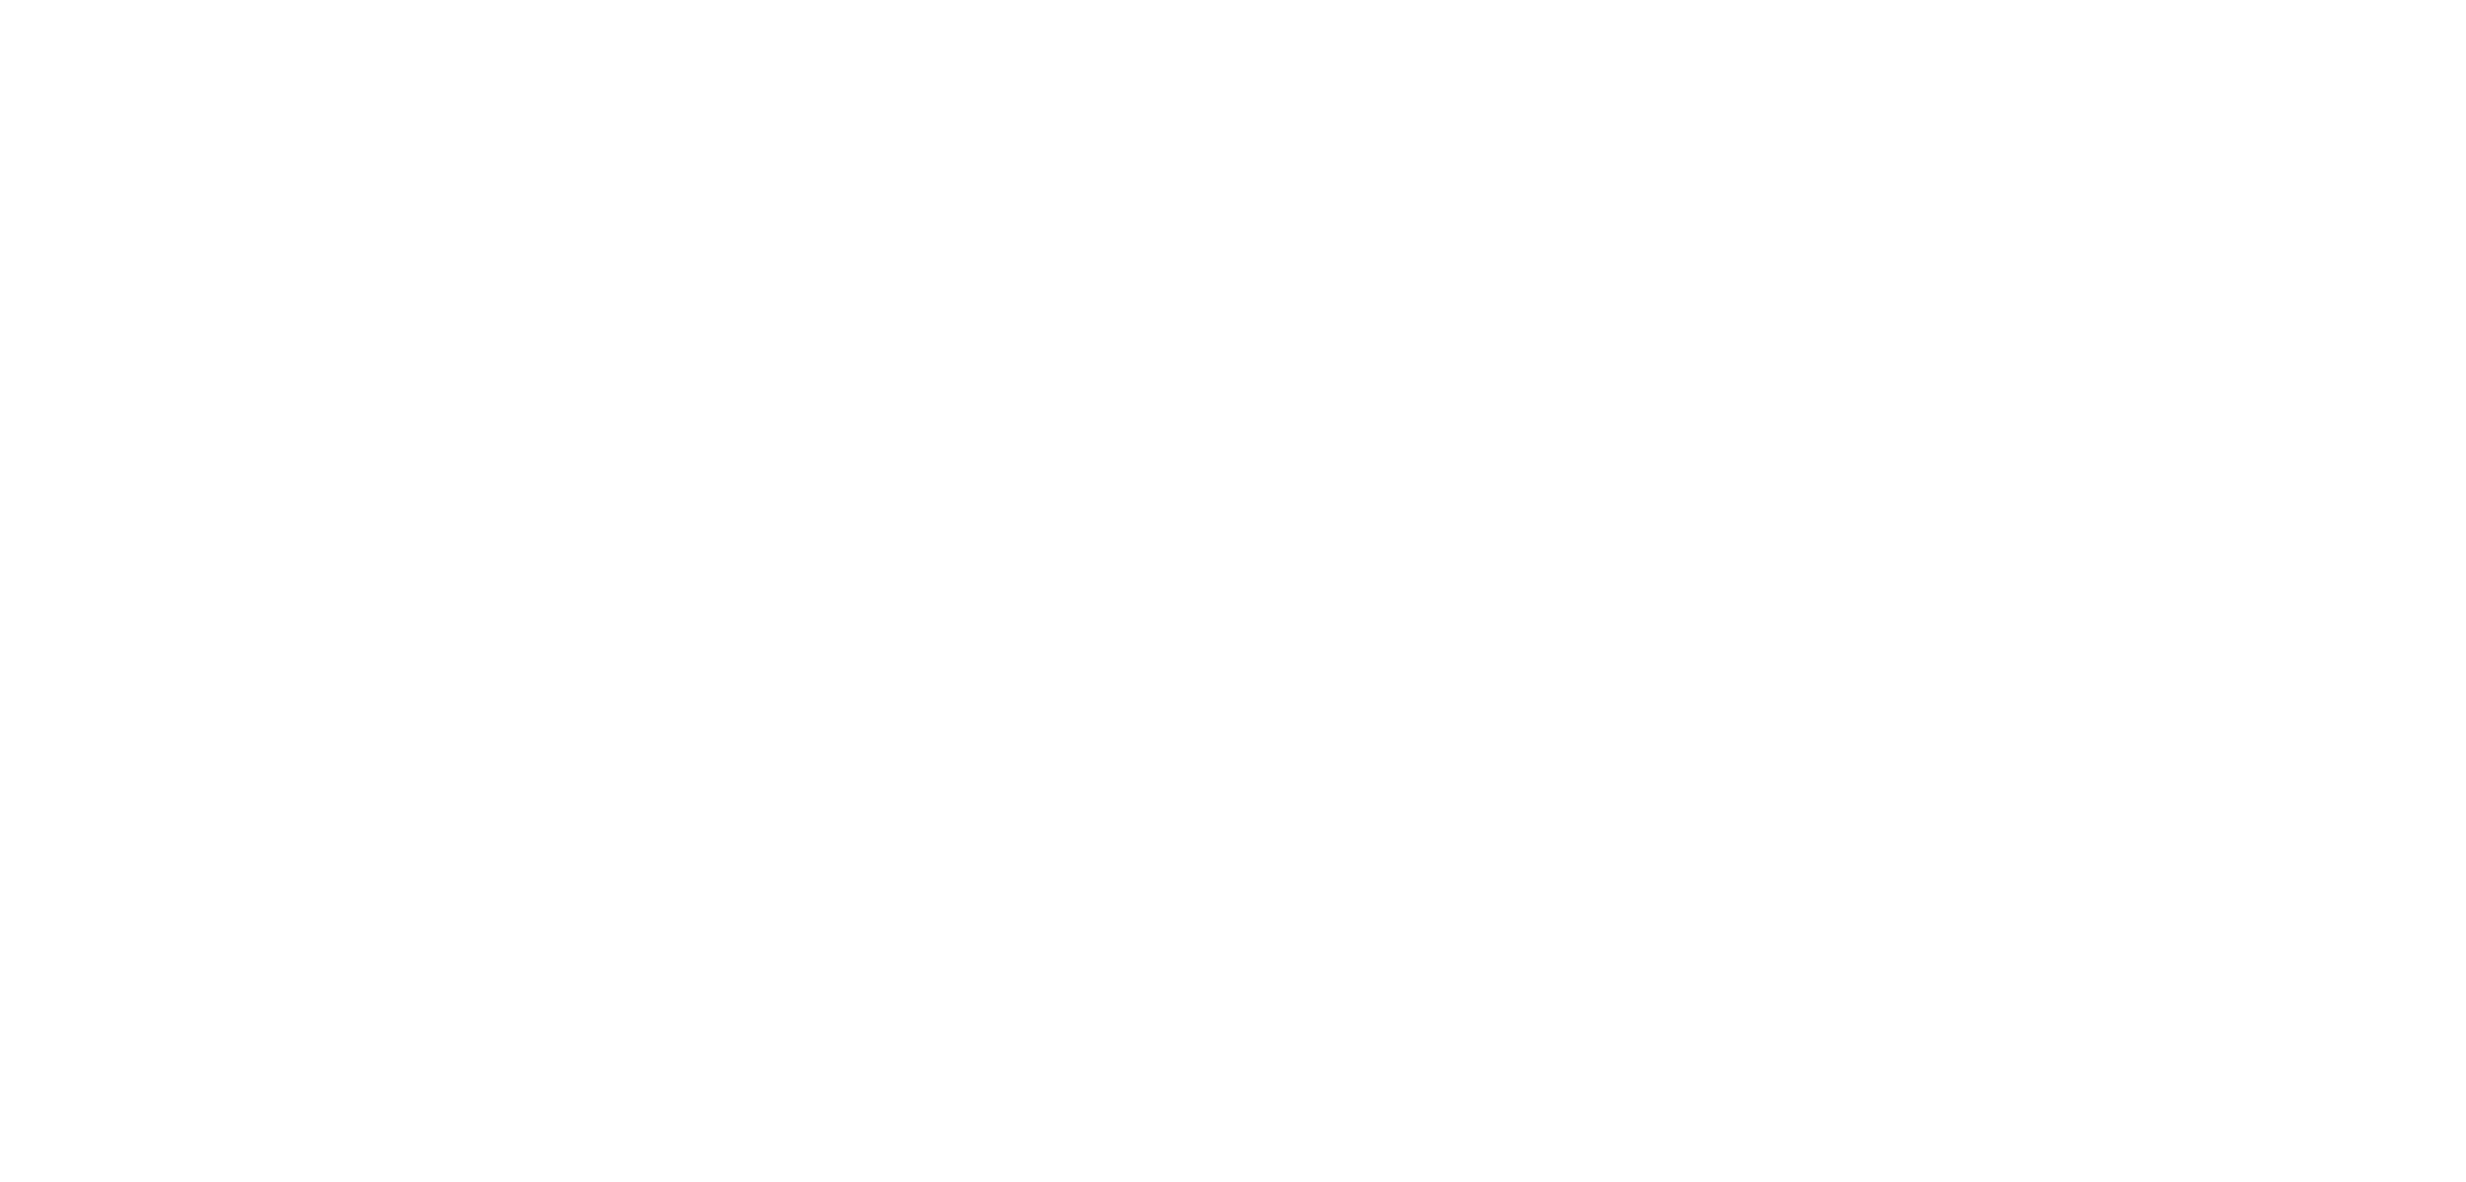 Logotyp Bilda GävleDala